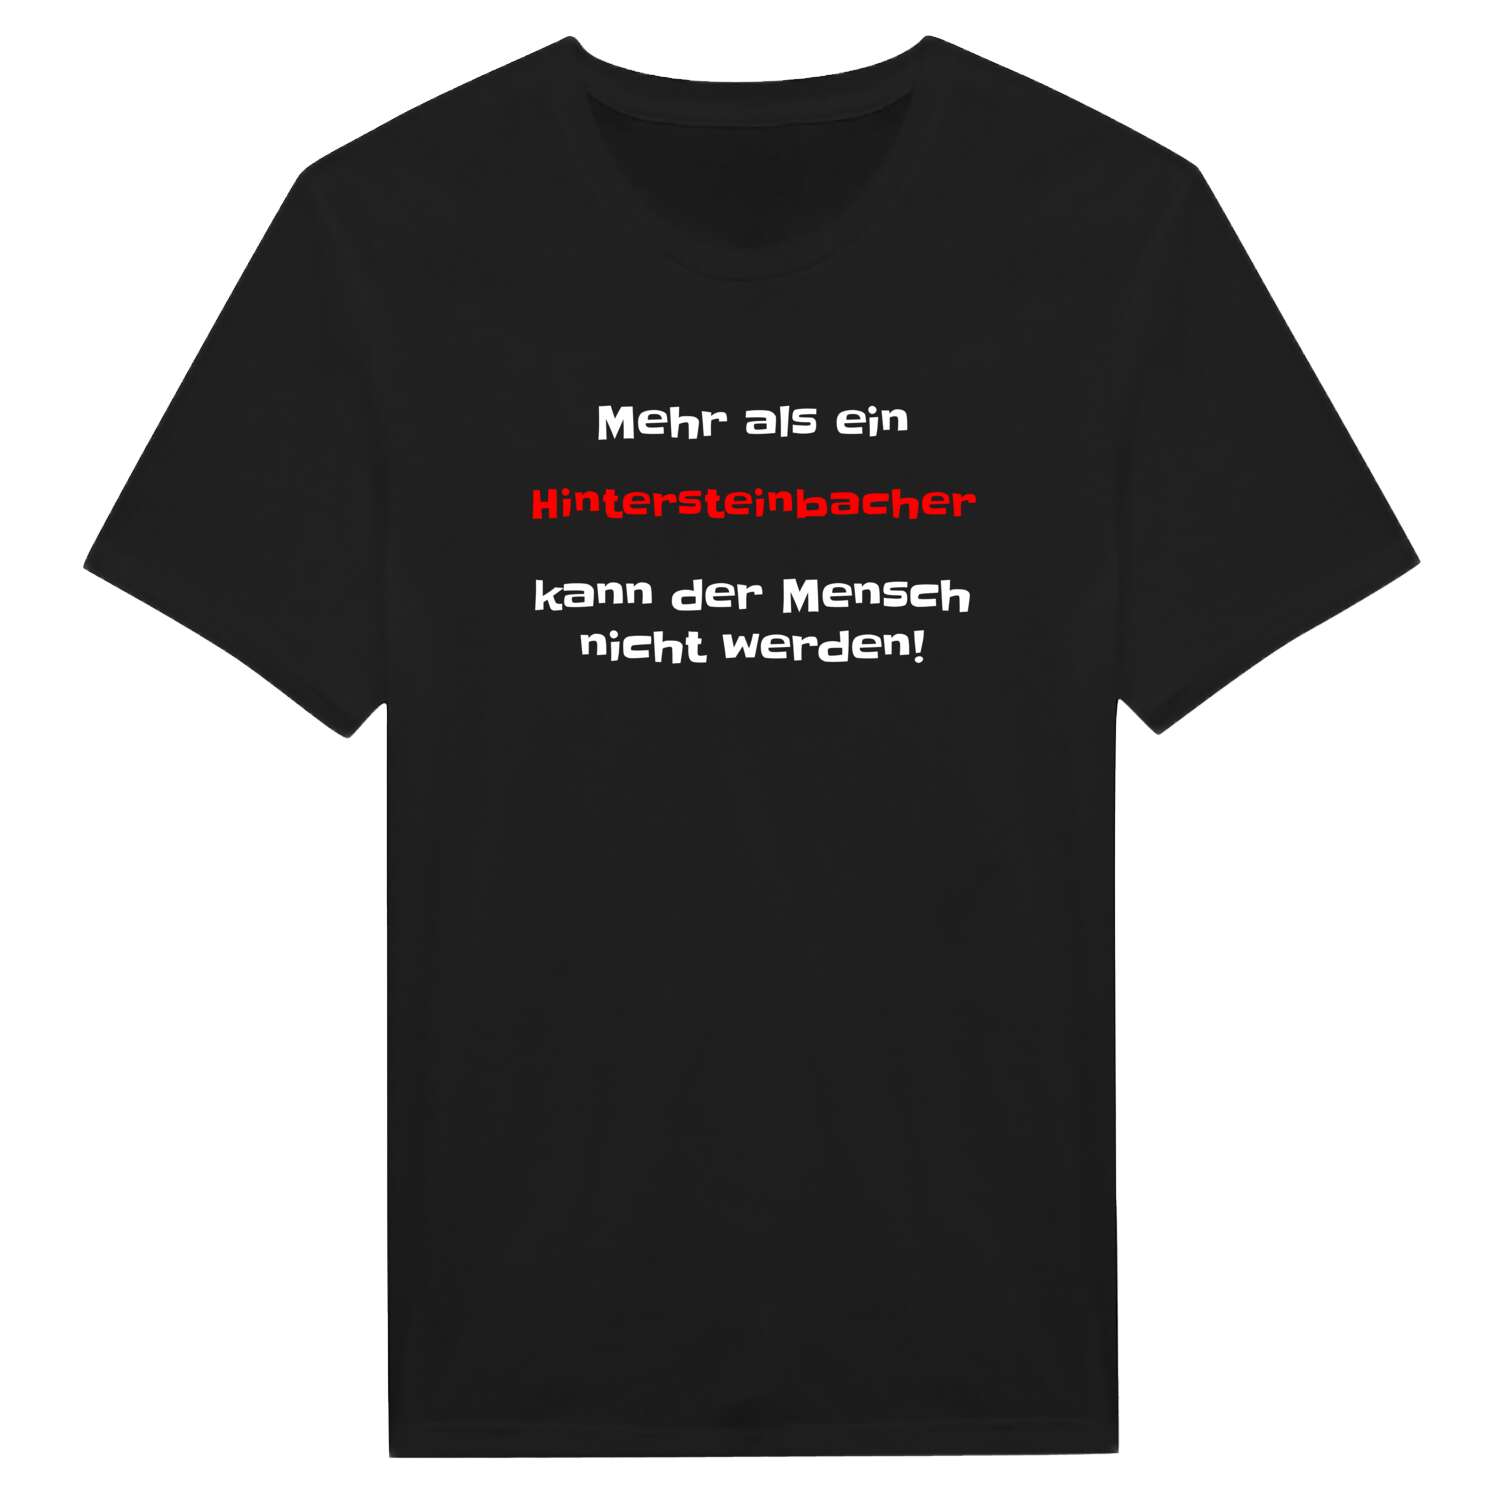 Hintersteinbach T-Shirt »Mehr als ein«